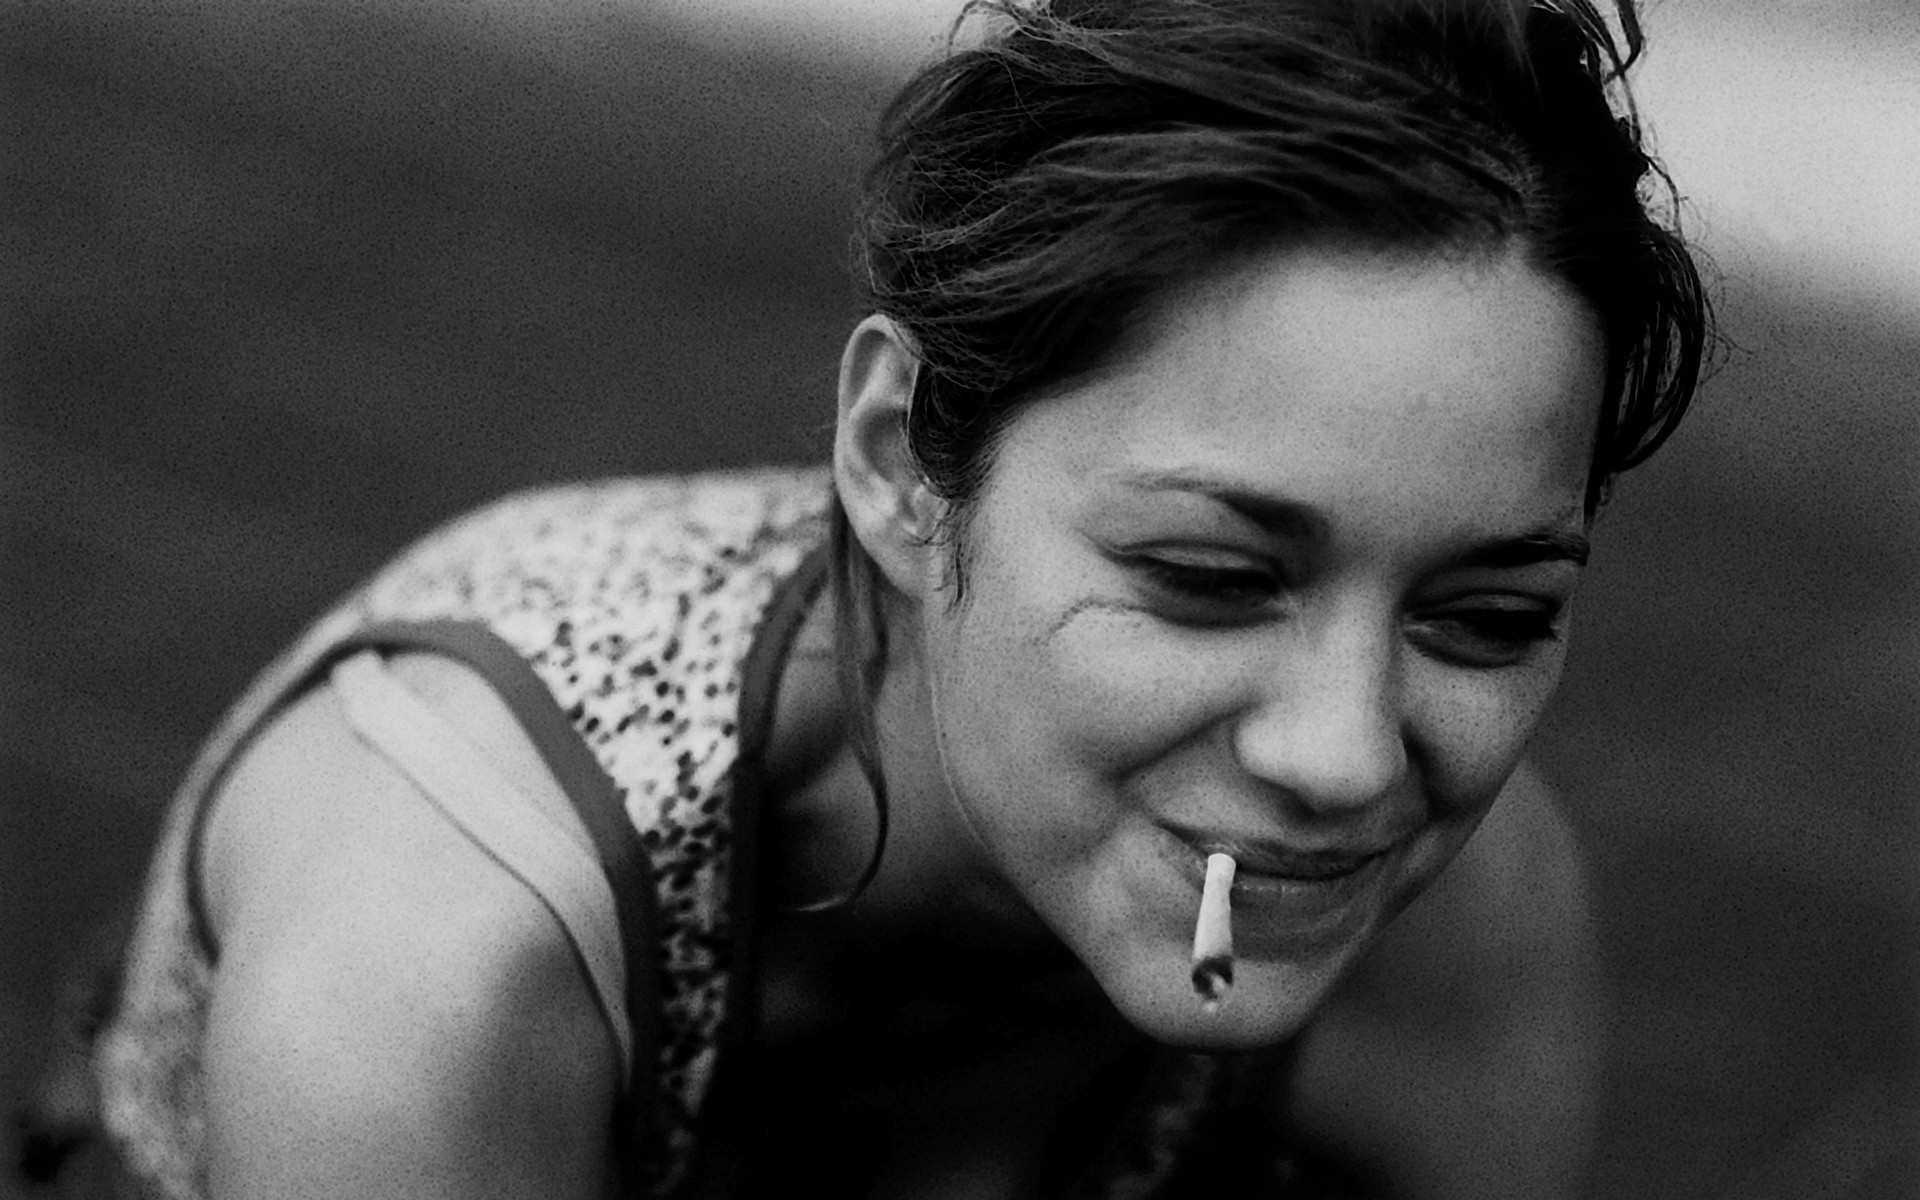 Marion Cotillard røyker sigarett (eller hasj)
